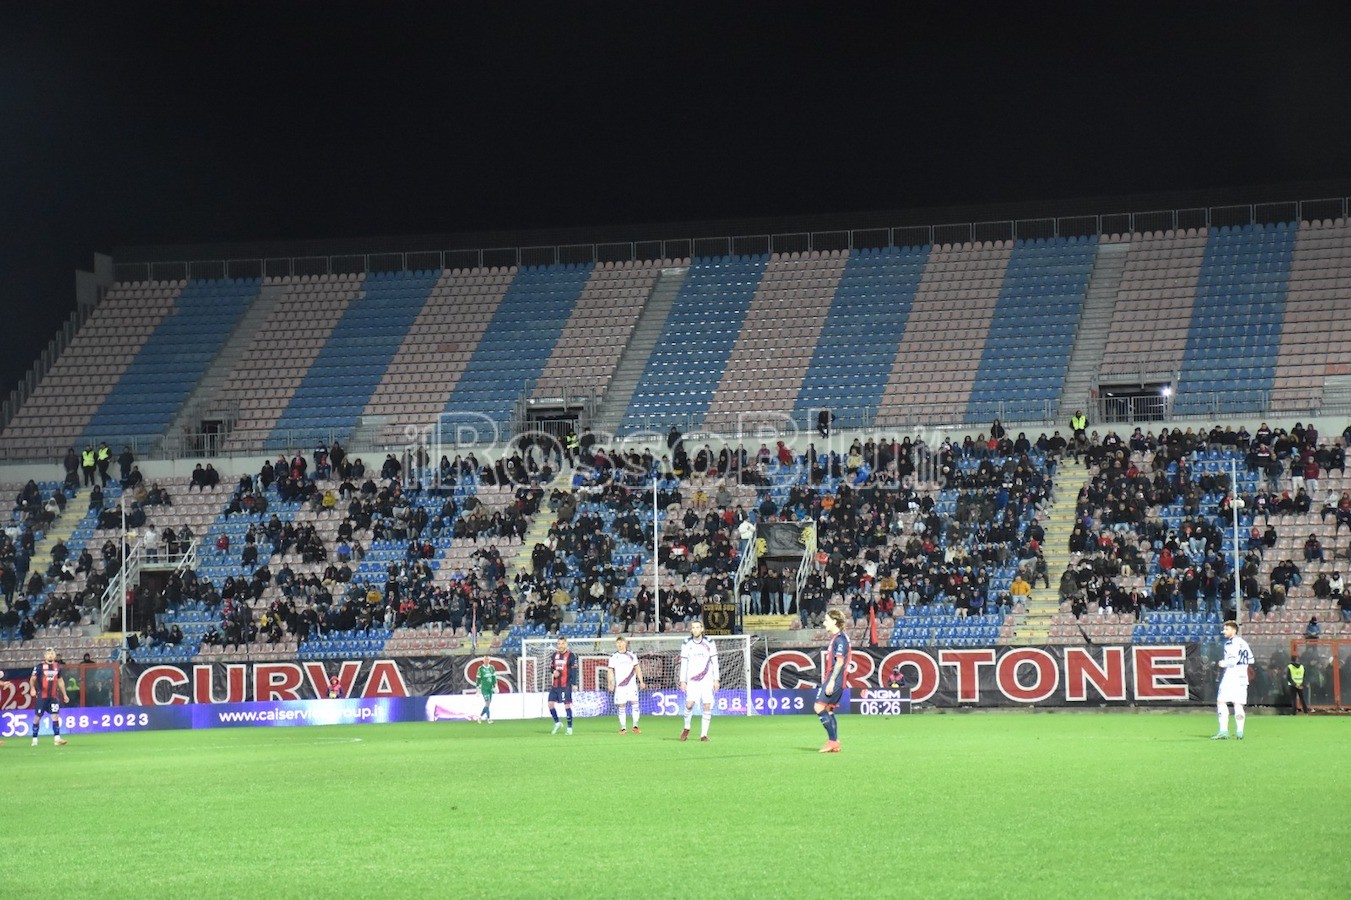 – 20 Giornata – Crotone vs Catania 3-0 Protesta Curva – (Rosito Andrea 07.01.2024)